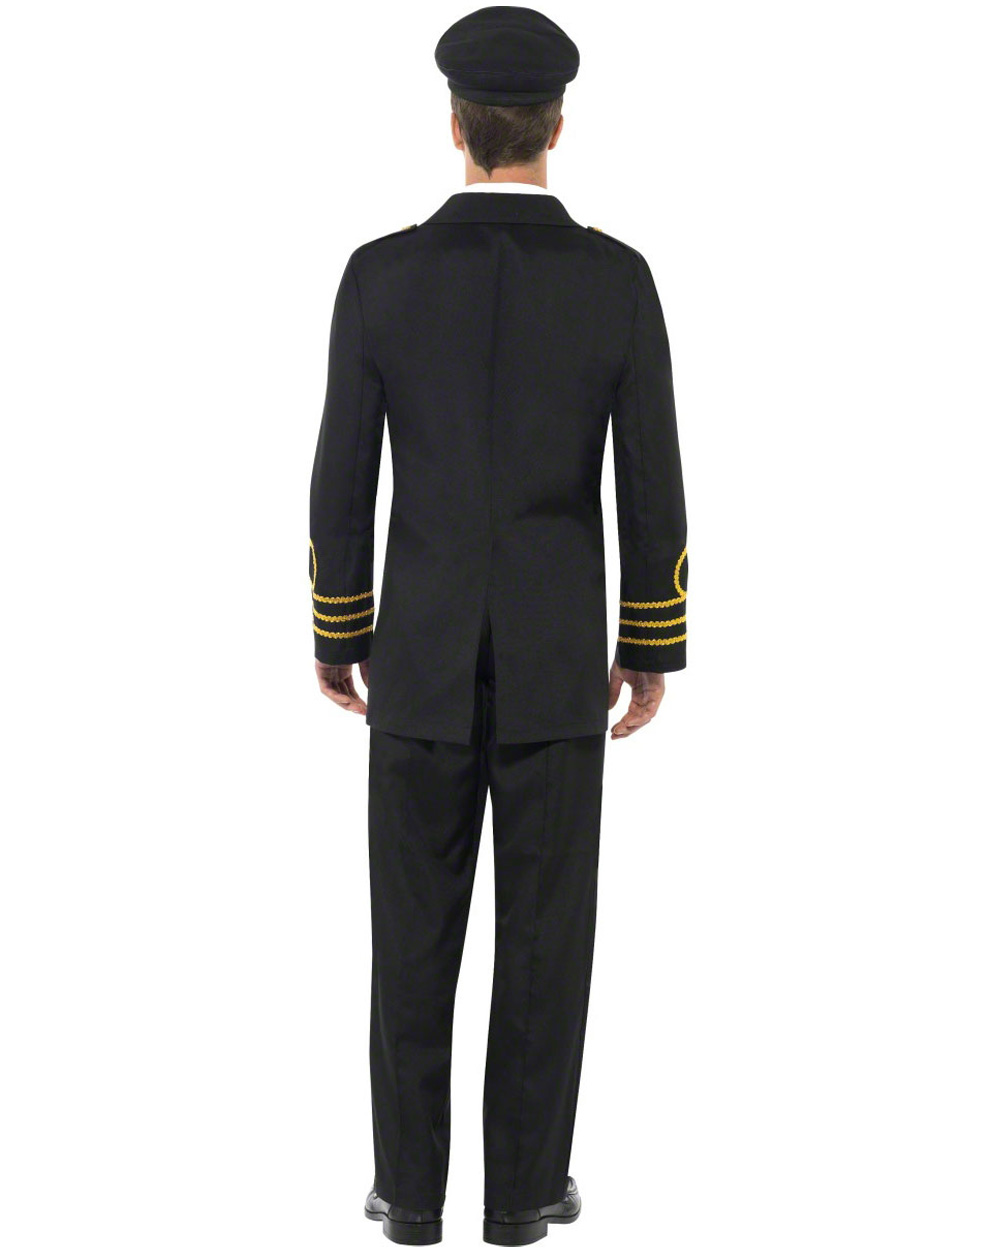 CL421 Mens Navy Officer Pilot Flight Captain Sailor Fancy Dress Costume Outfit